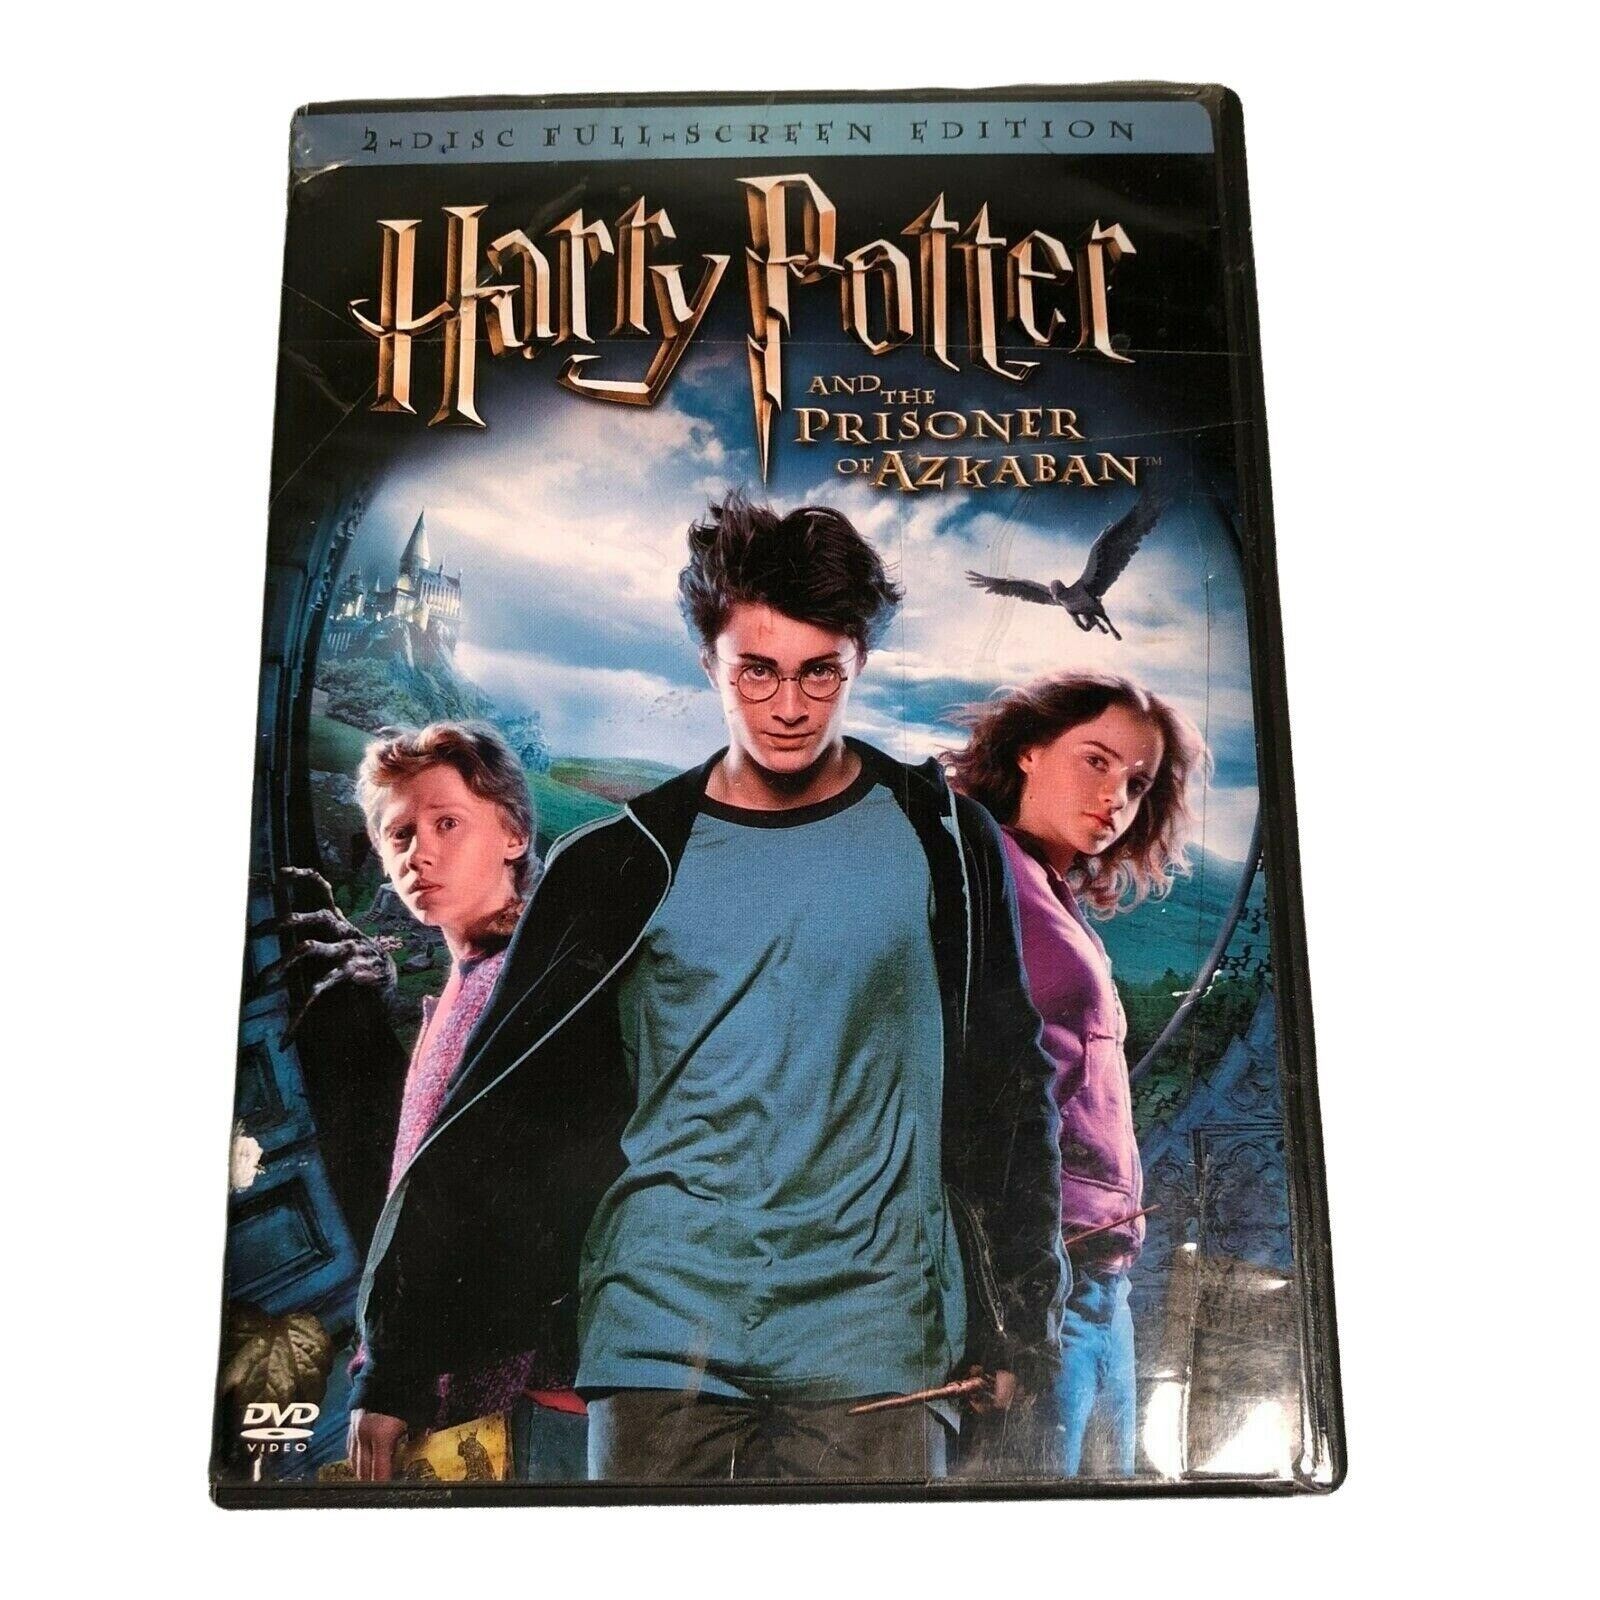 Primary image for Harry Potter and the Prisoner of Azkaban (DVD, 2004, 2-Disc Set, Full Screen)